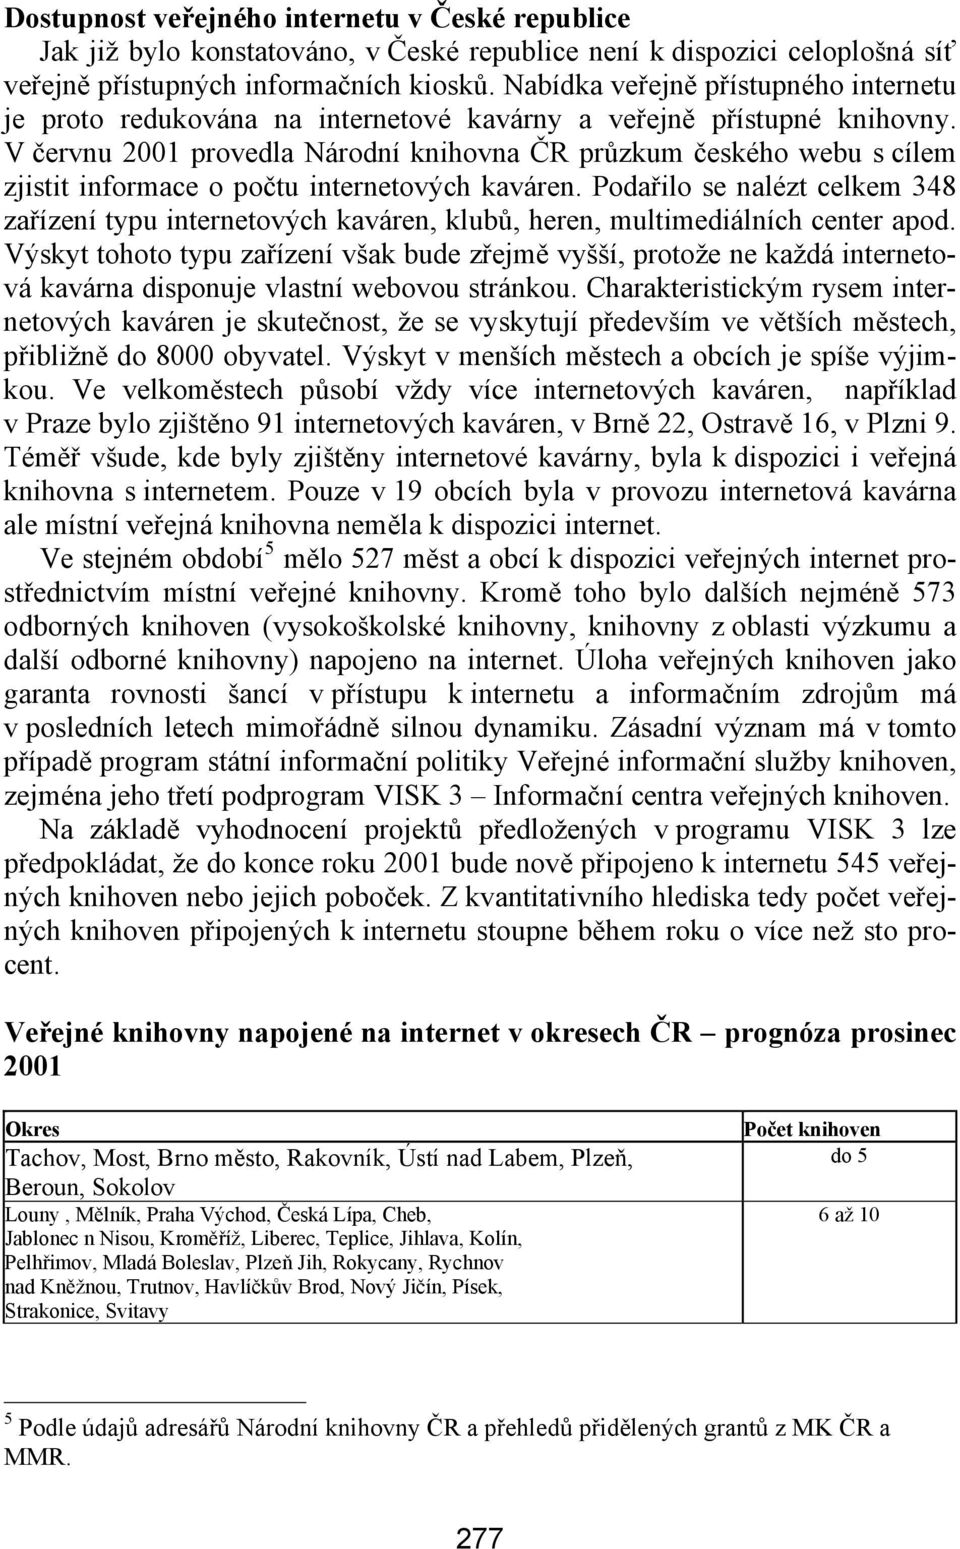 V červnu 2001 provedla Národní knihovna ČR průzkum českého webu s cílem zjistit informace o počtu internetových kaváren.